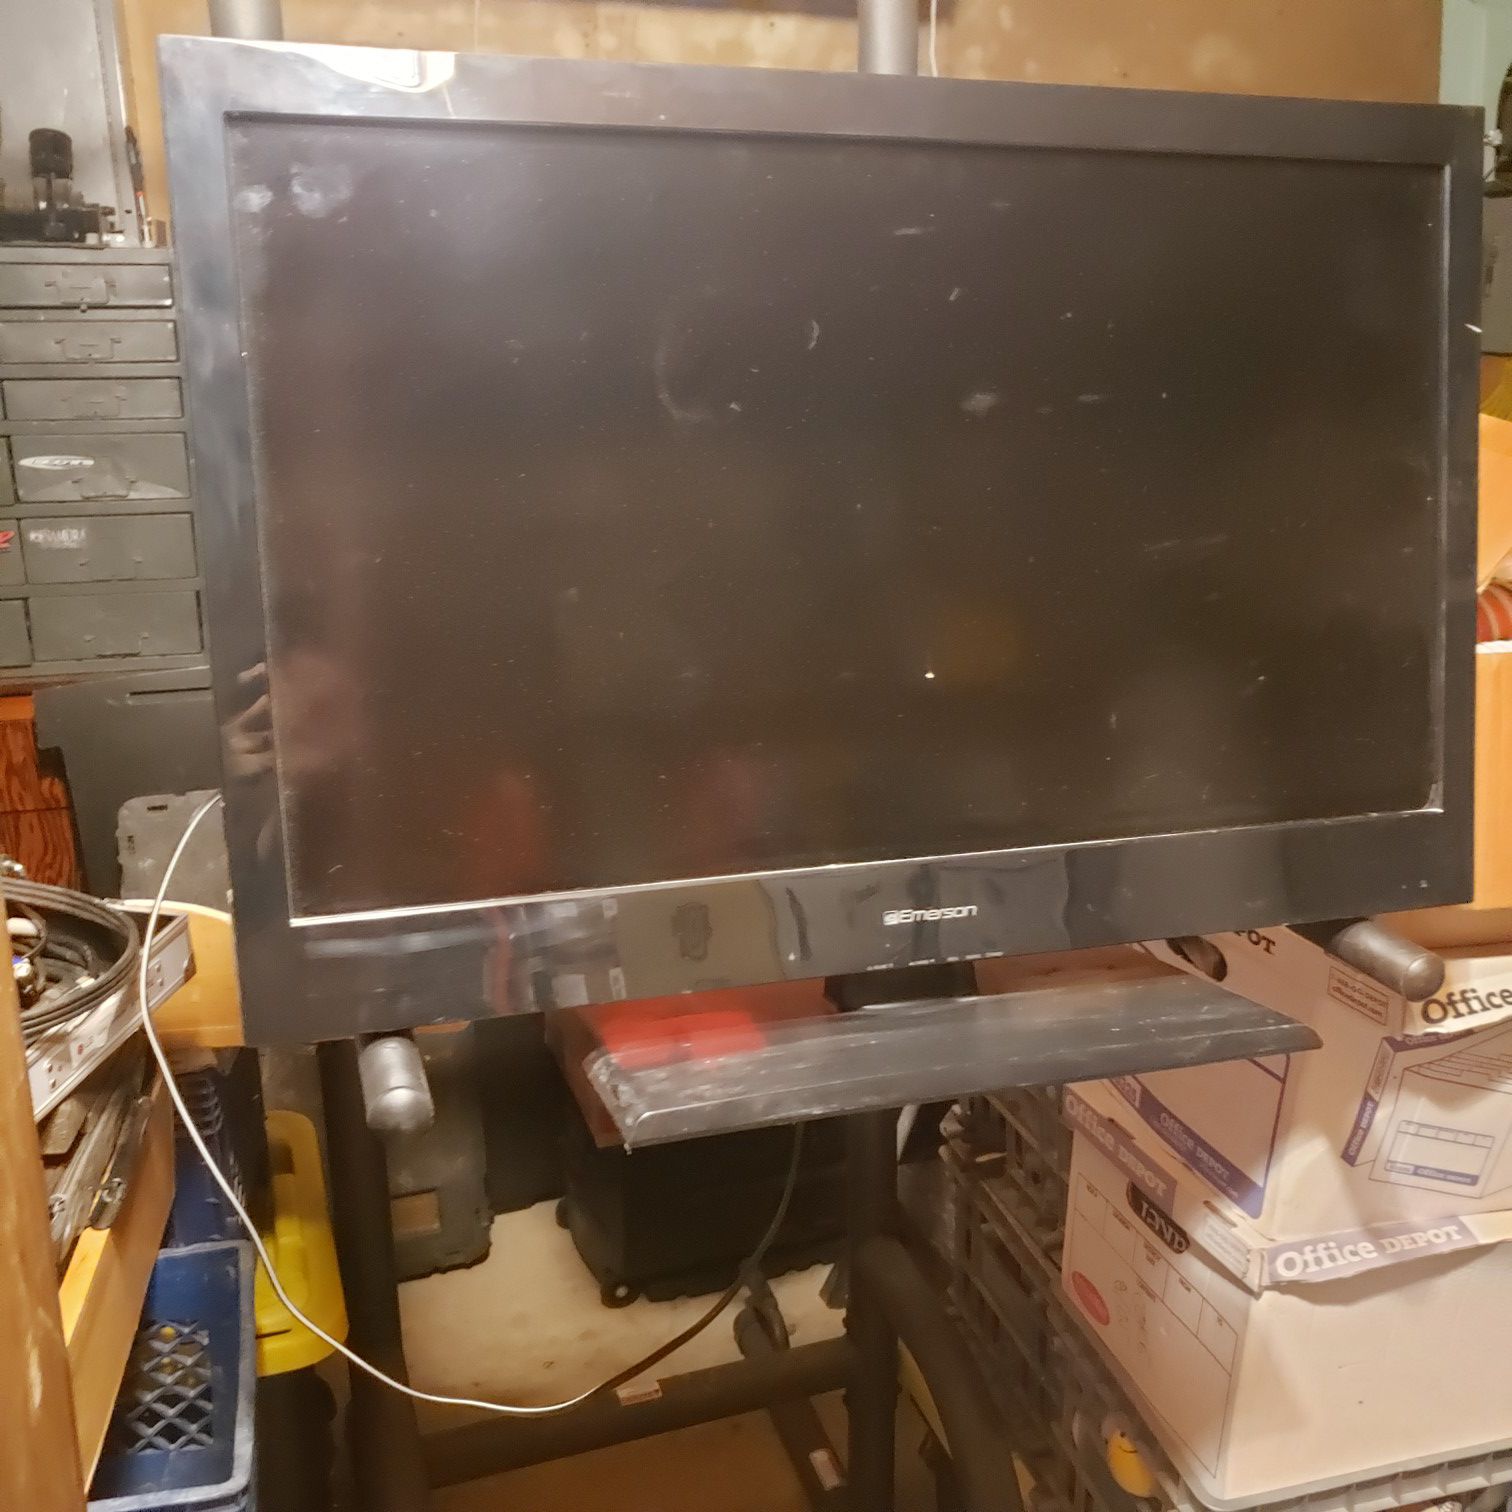 32" flat screen tv